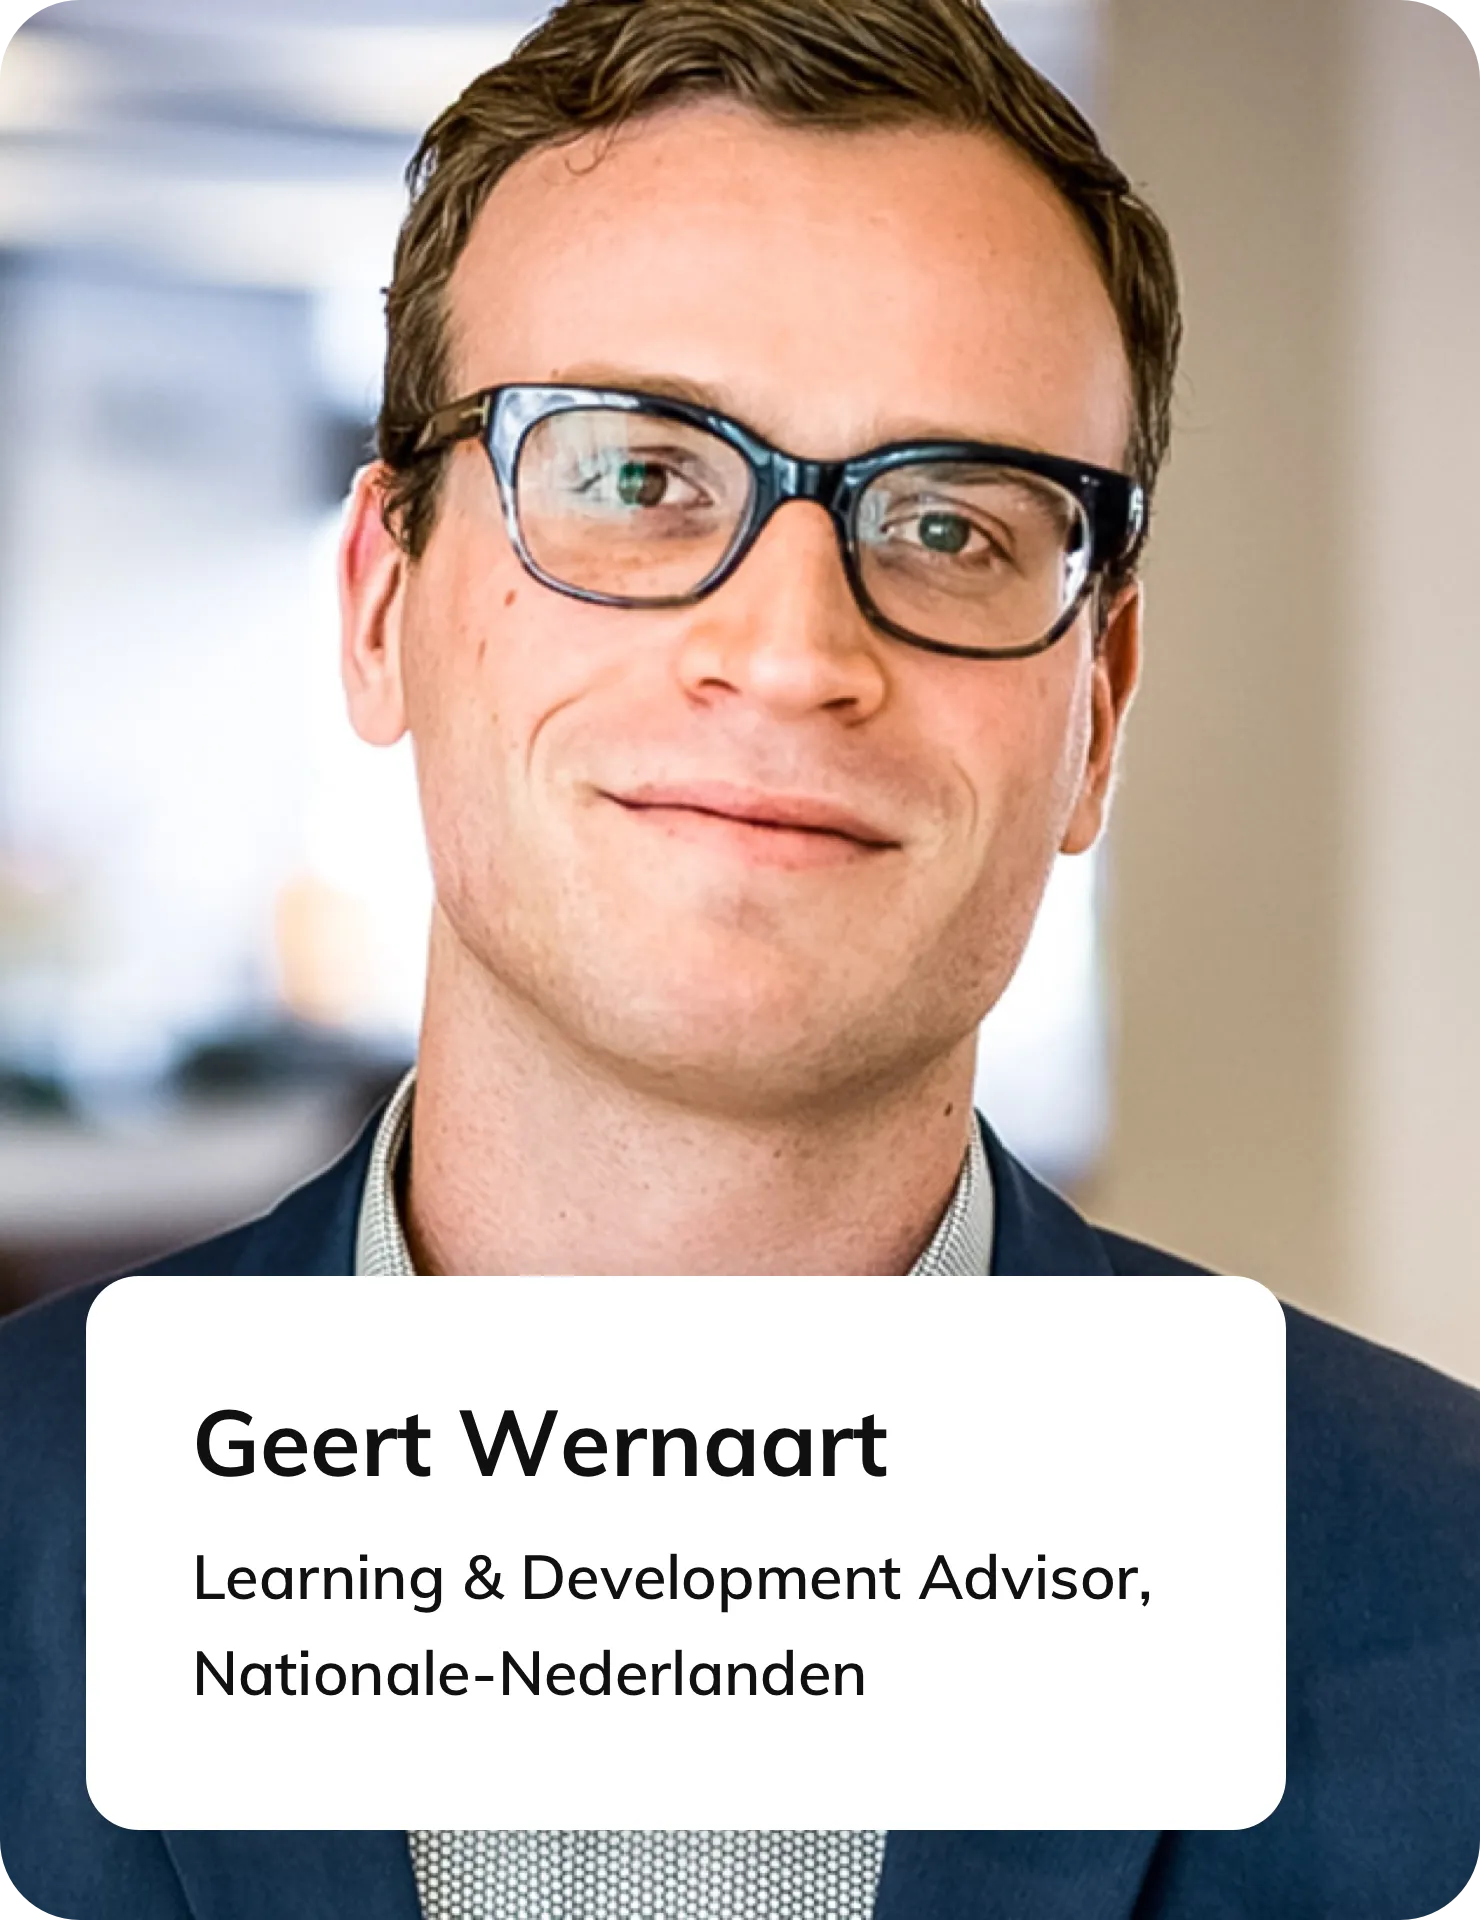 Geert Wernaart, Former Senior Learning & Development Advisor at Nationale Nederlanden